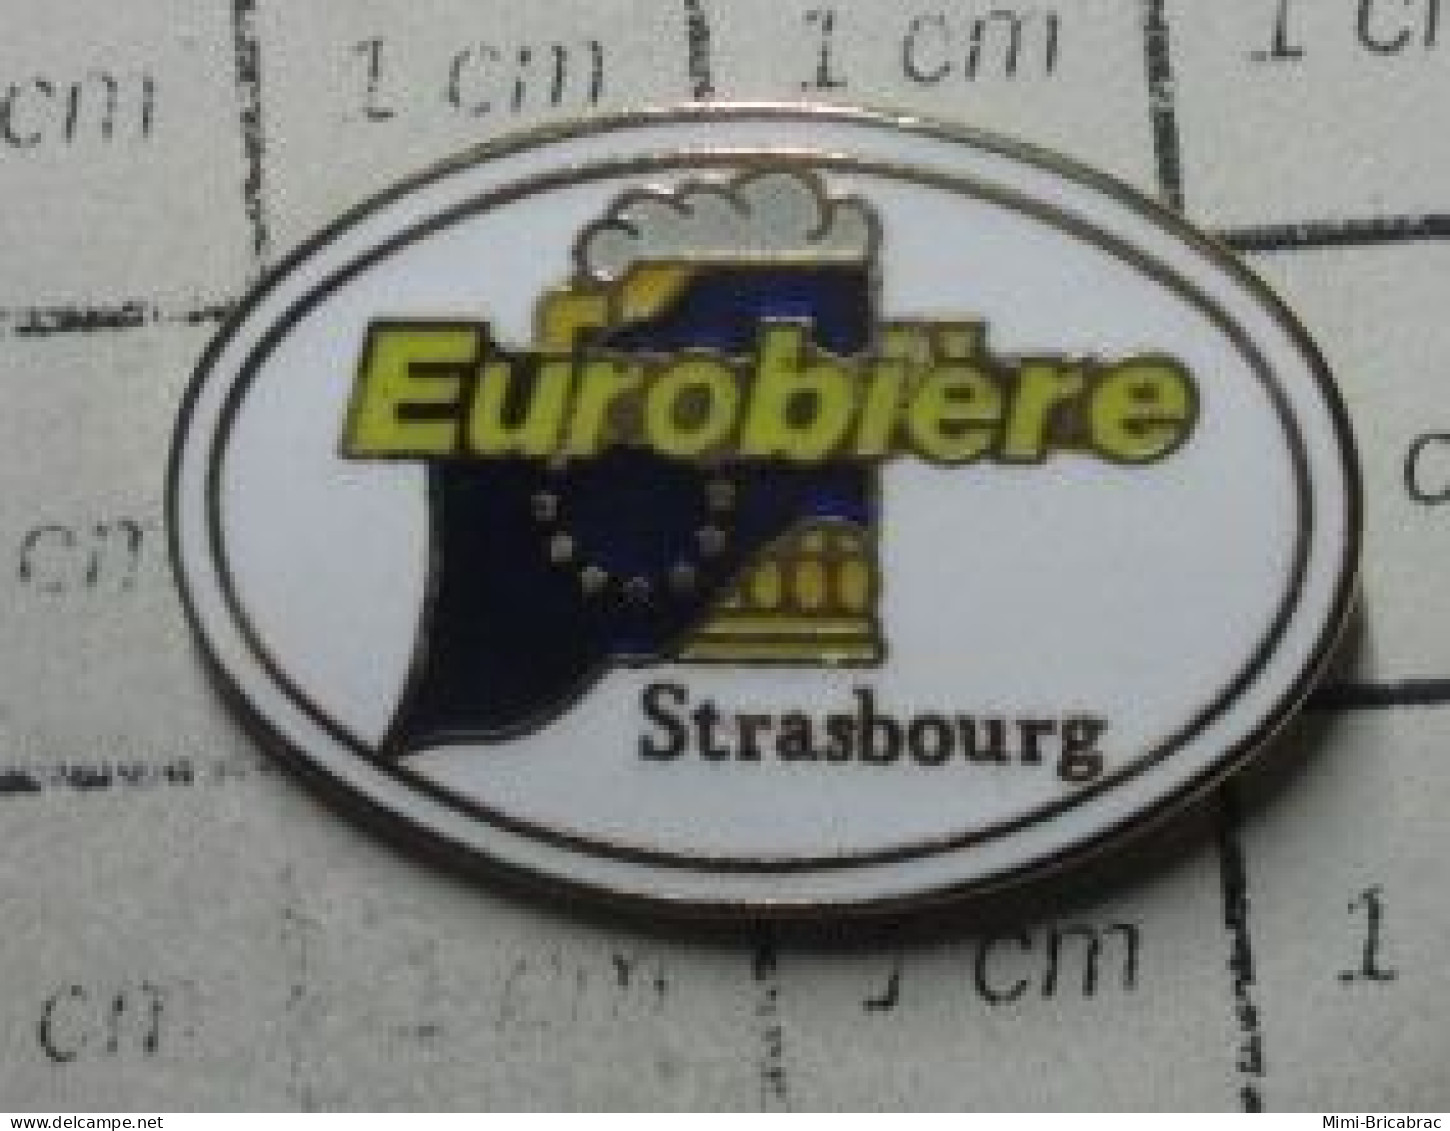 918c Pin's Pins / Rare Et De Belle Qualité !!! BIERES / EUROBIERE STRASBOURG CHOPE PRESSION - Bière